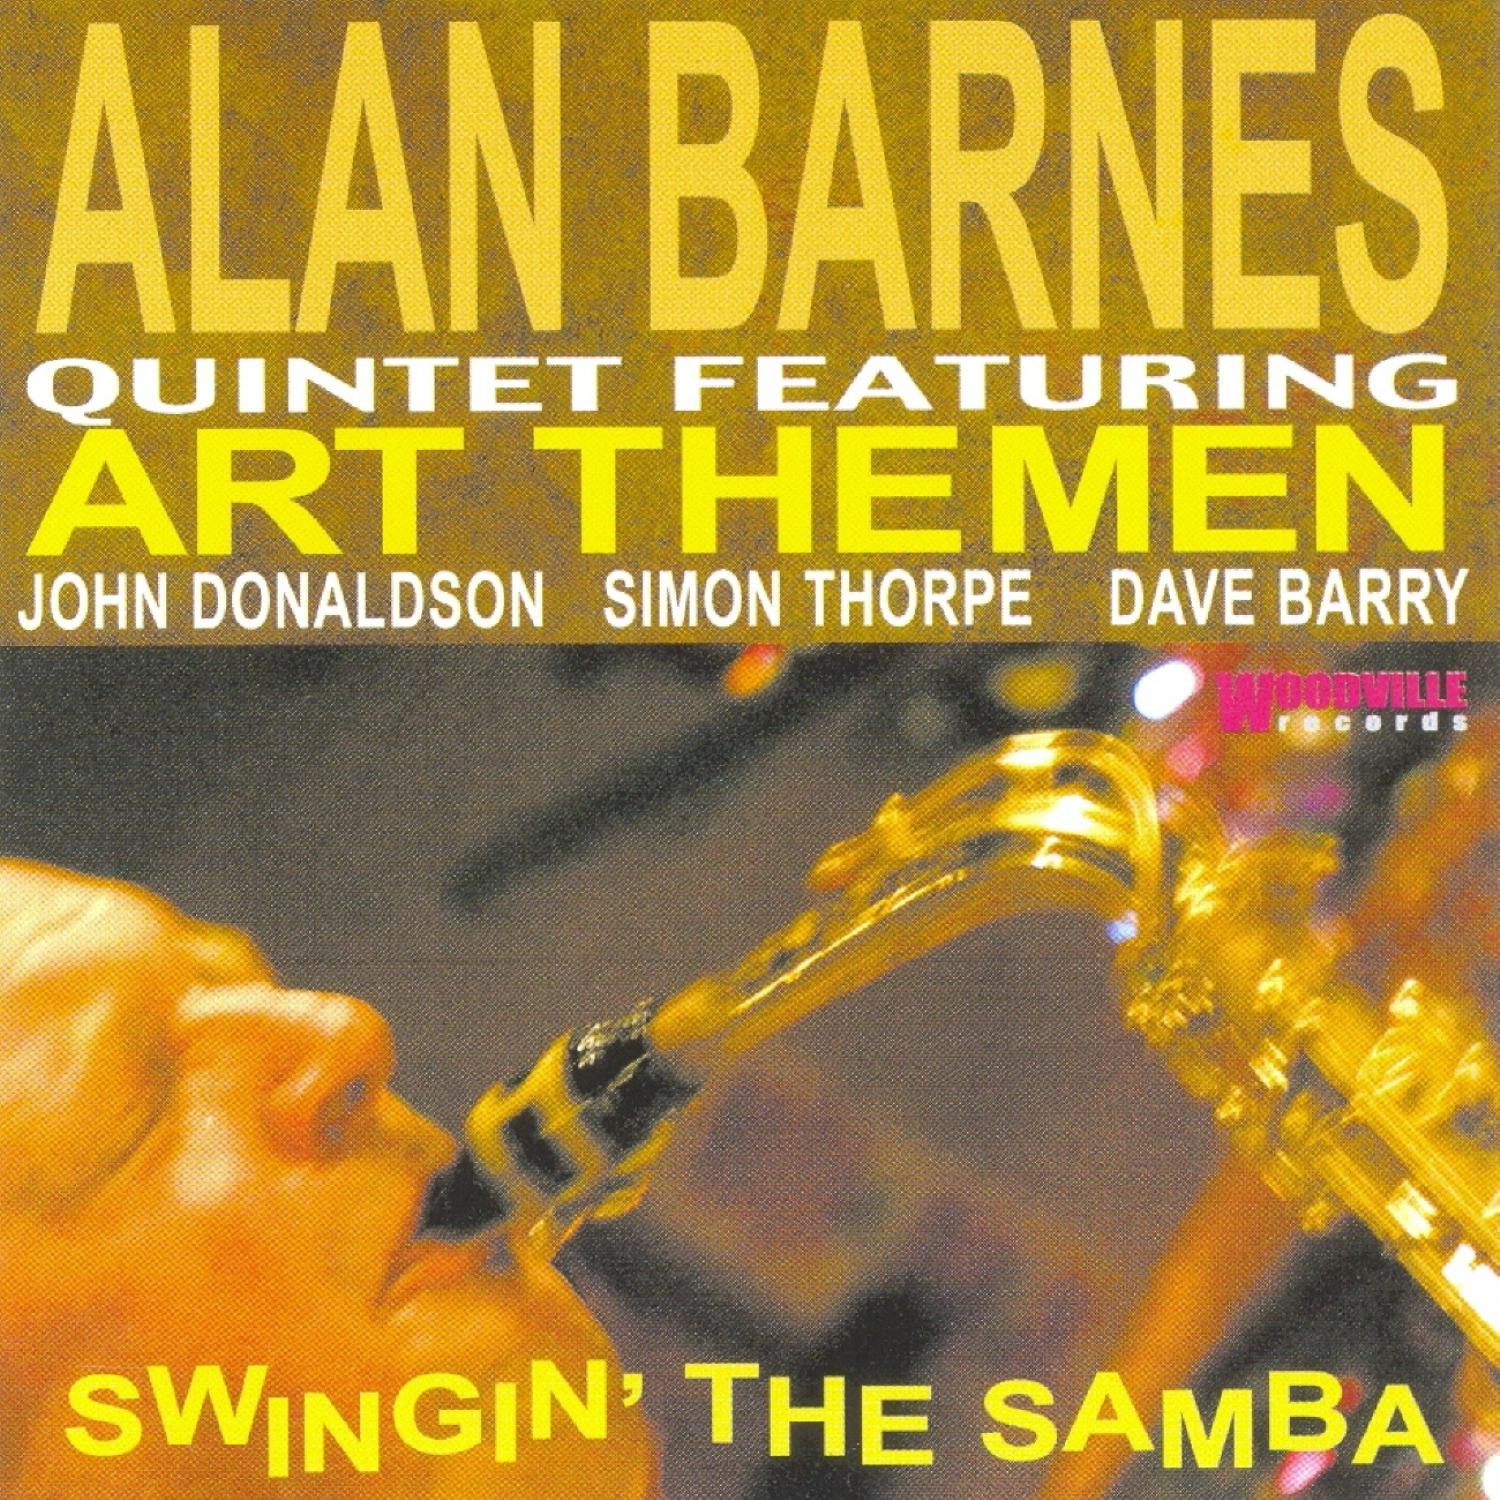 Alan Barnes Quintet - La-teen-o